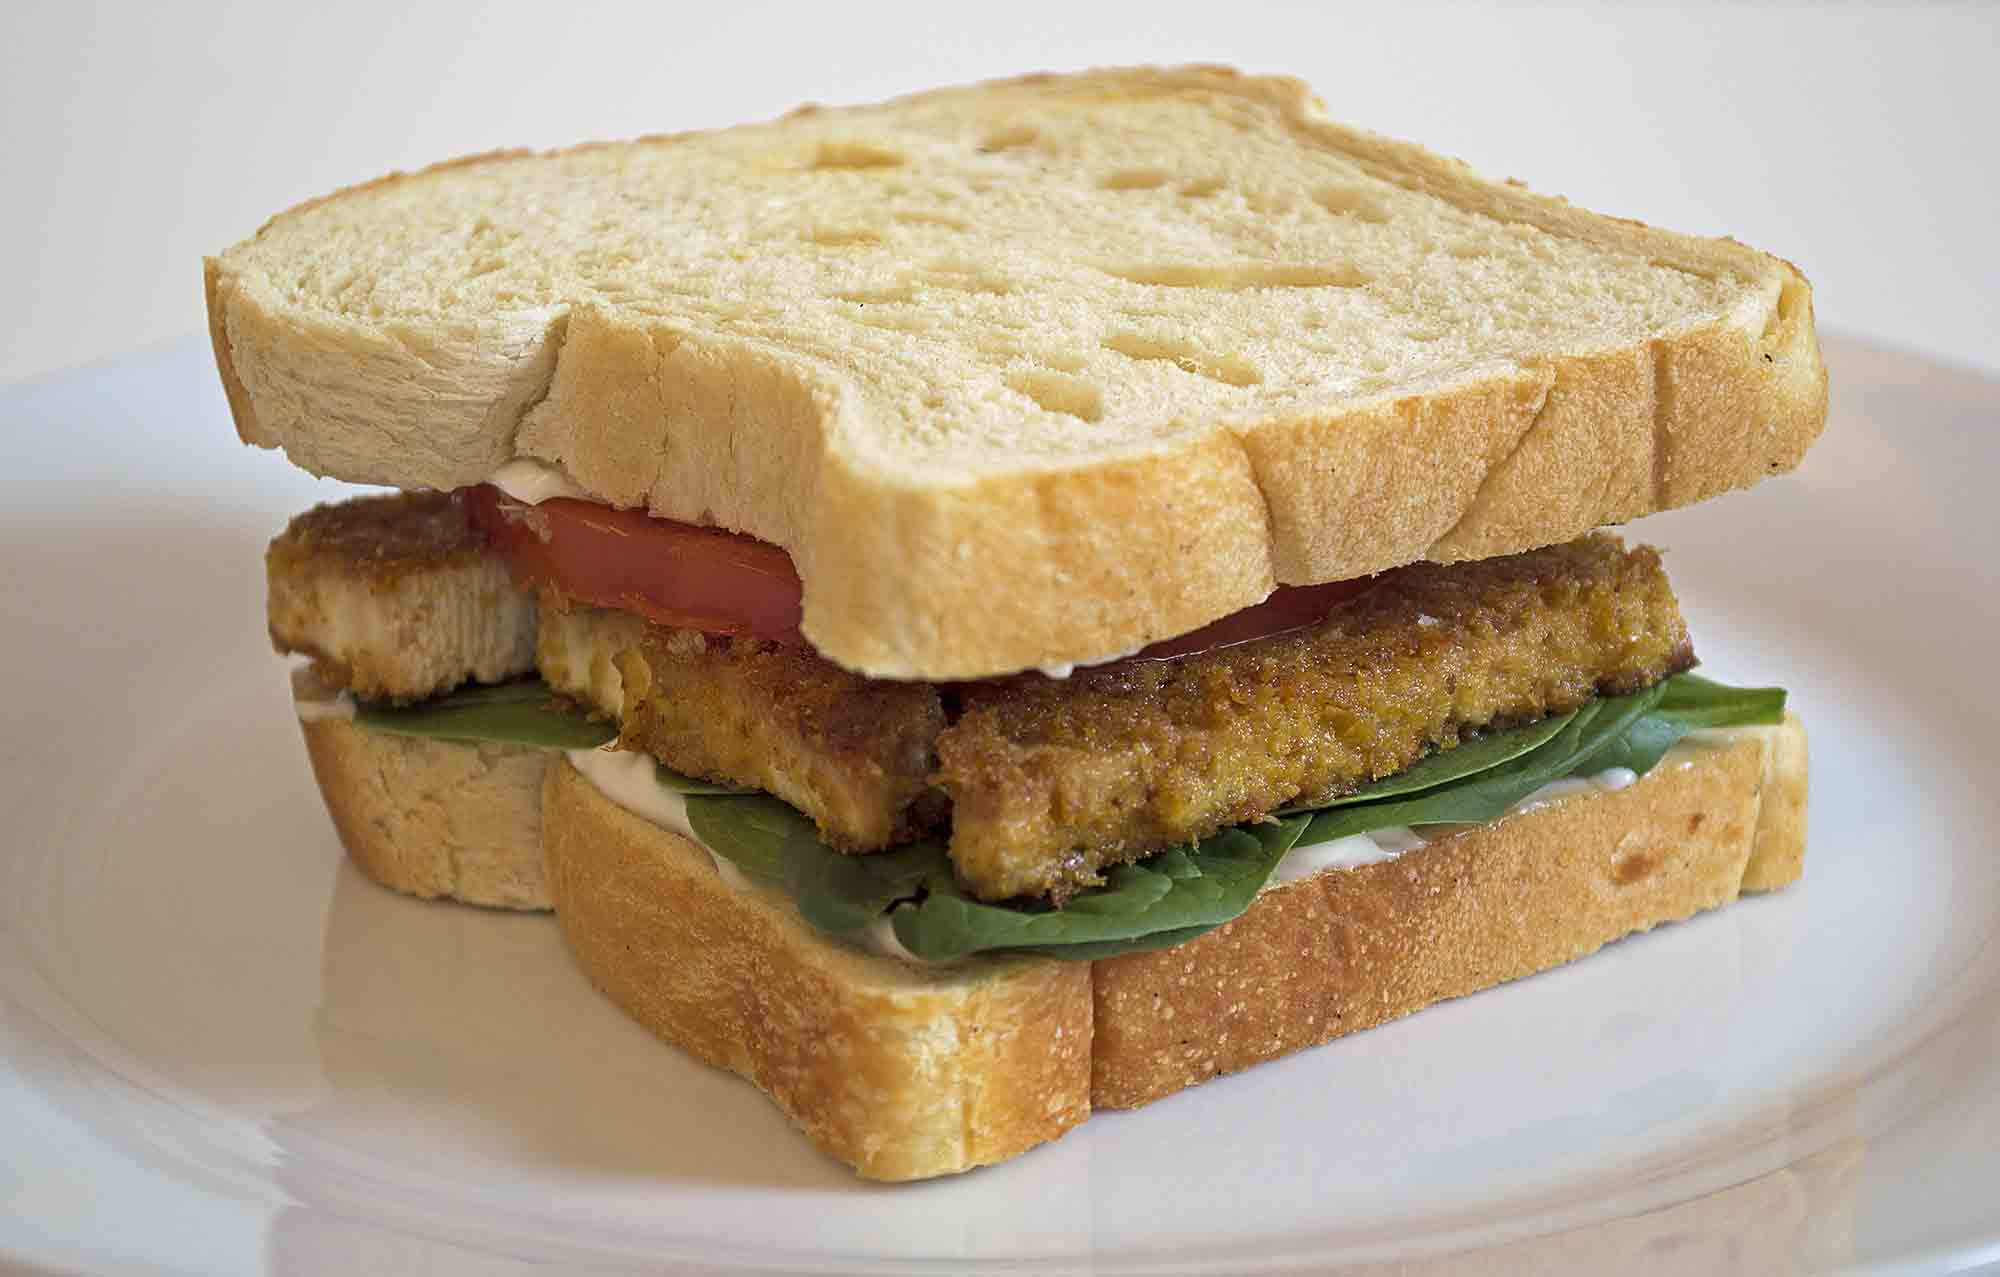 Fried Tofu Vegan Breakfast Sandwich